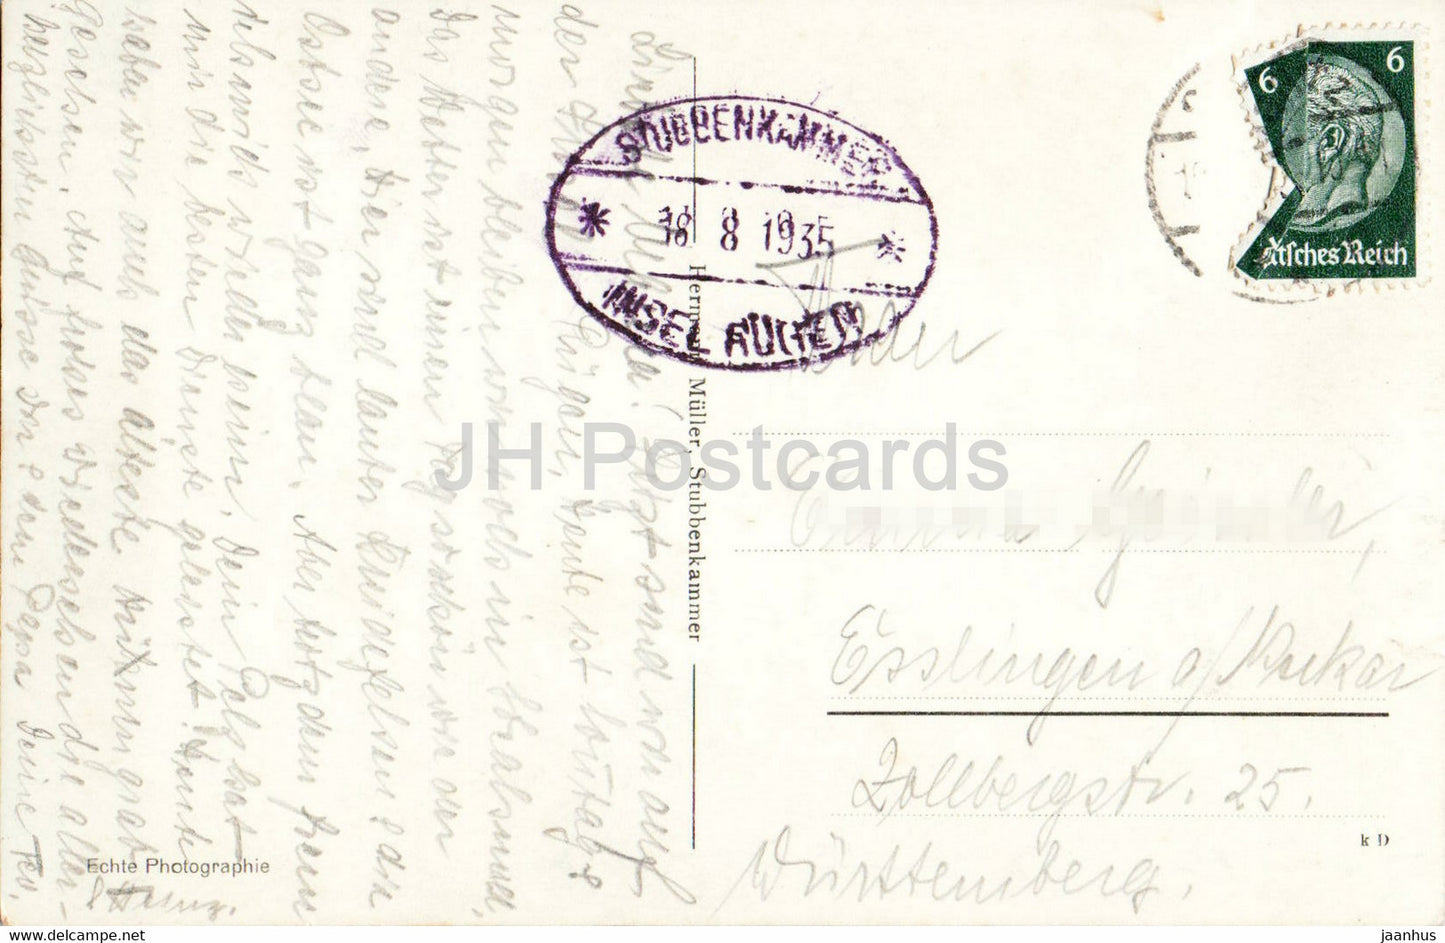 Rügen - Partie am Hengst - 22882 - alte Postkarte - 1907 - Deutschland - gebraucht